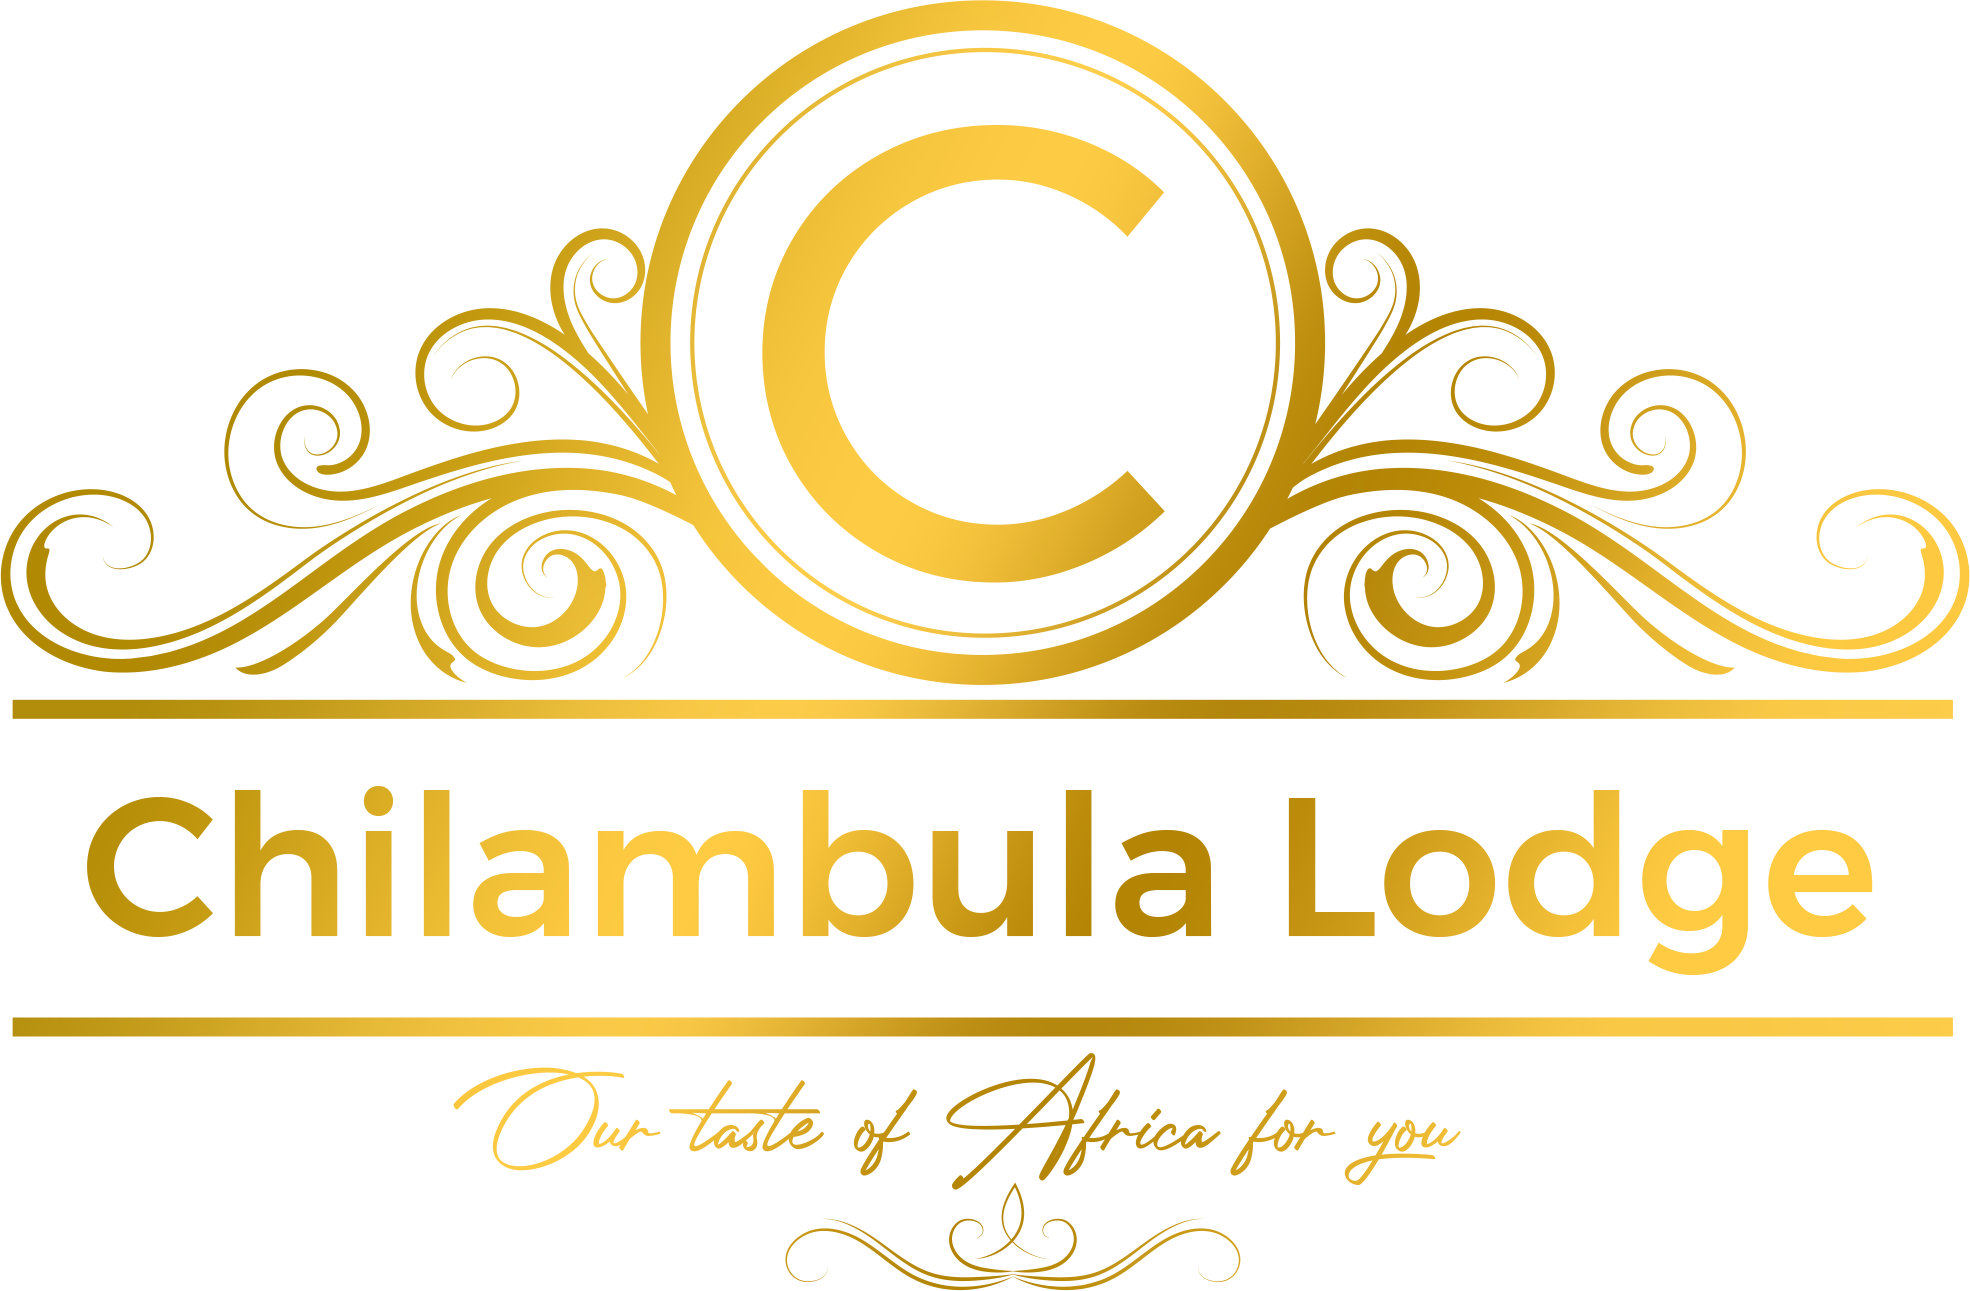 chilambula lodge logo